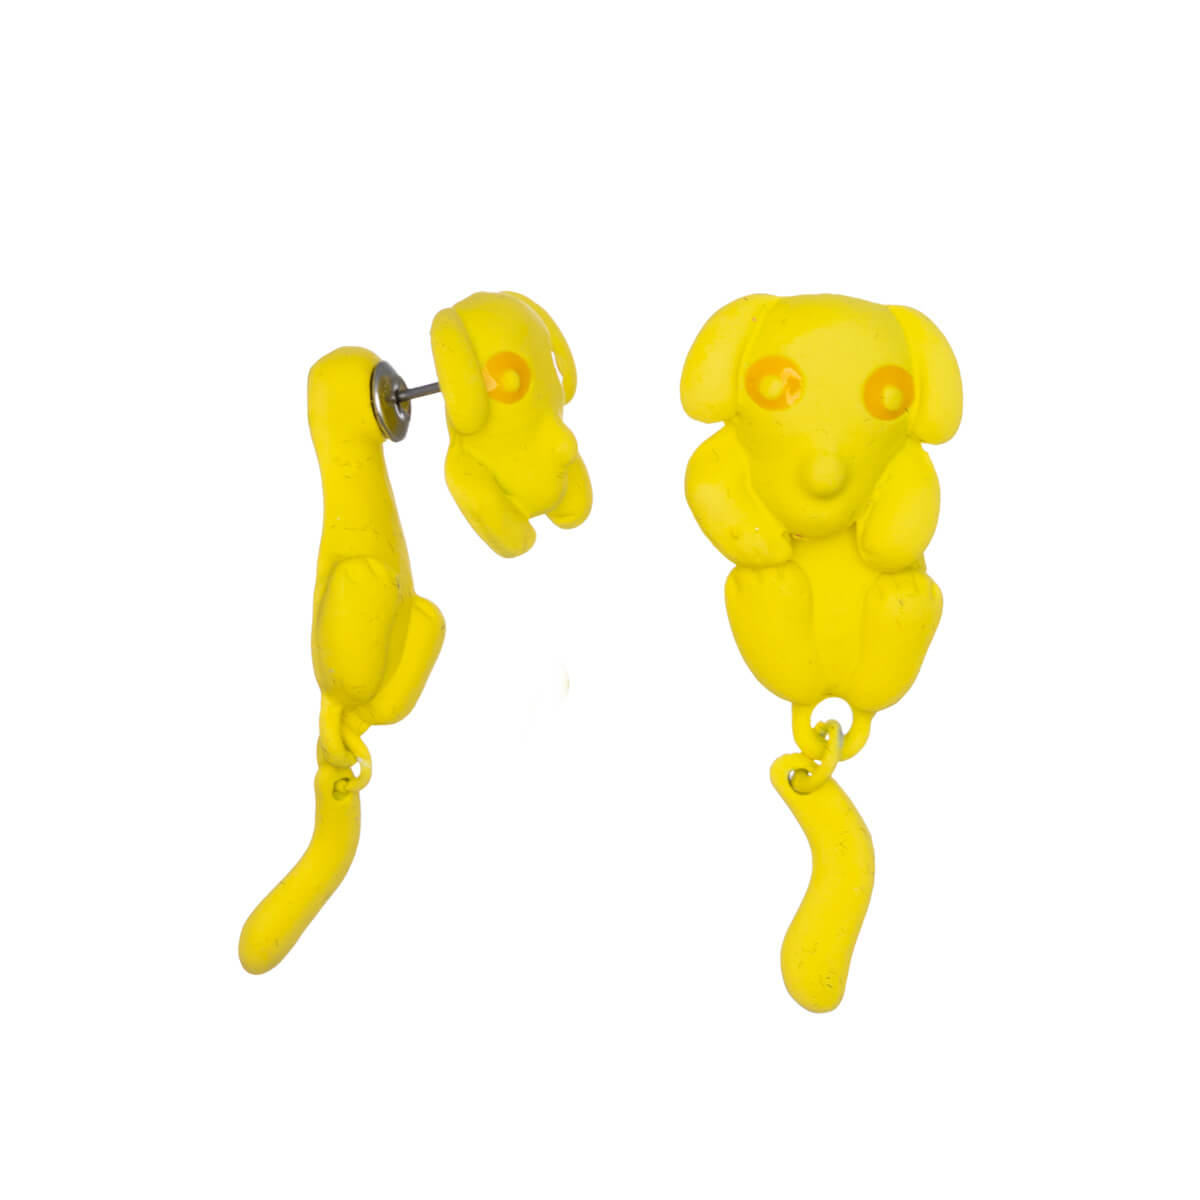 Hanging dog earrings